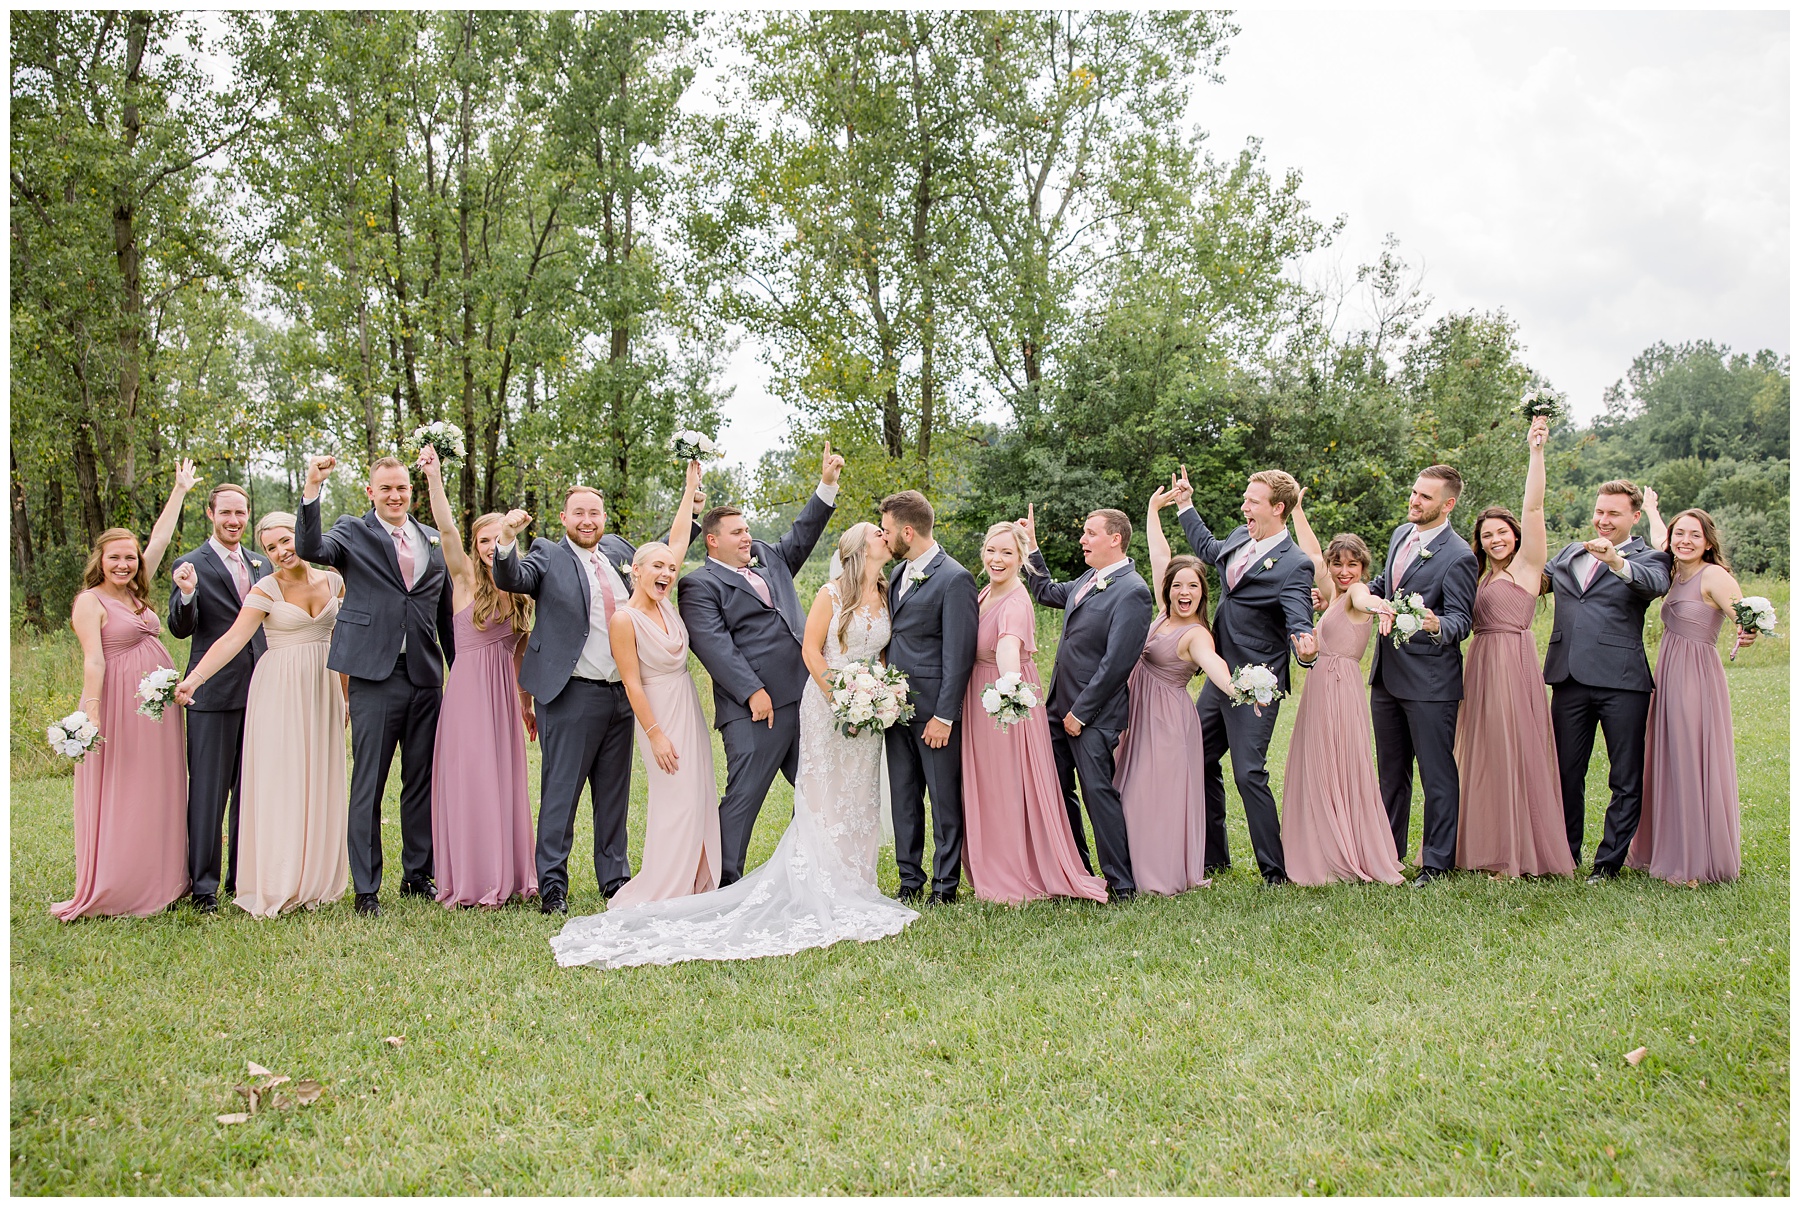 Summer Wedding at The Renaissance Hotel - Polaris. Columbus Ohio Wedding Photographer. Amanda Eloise Photography